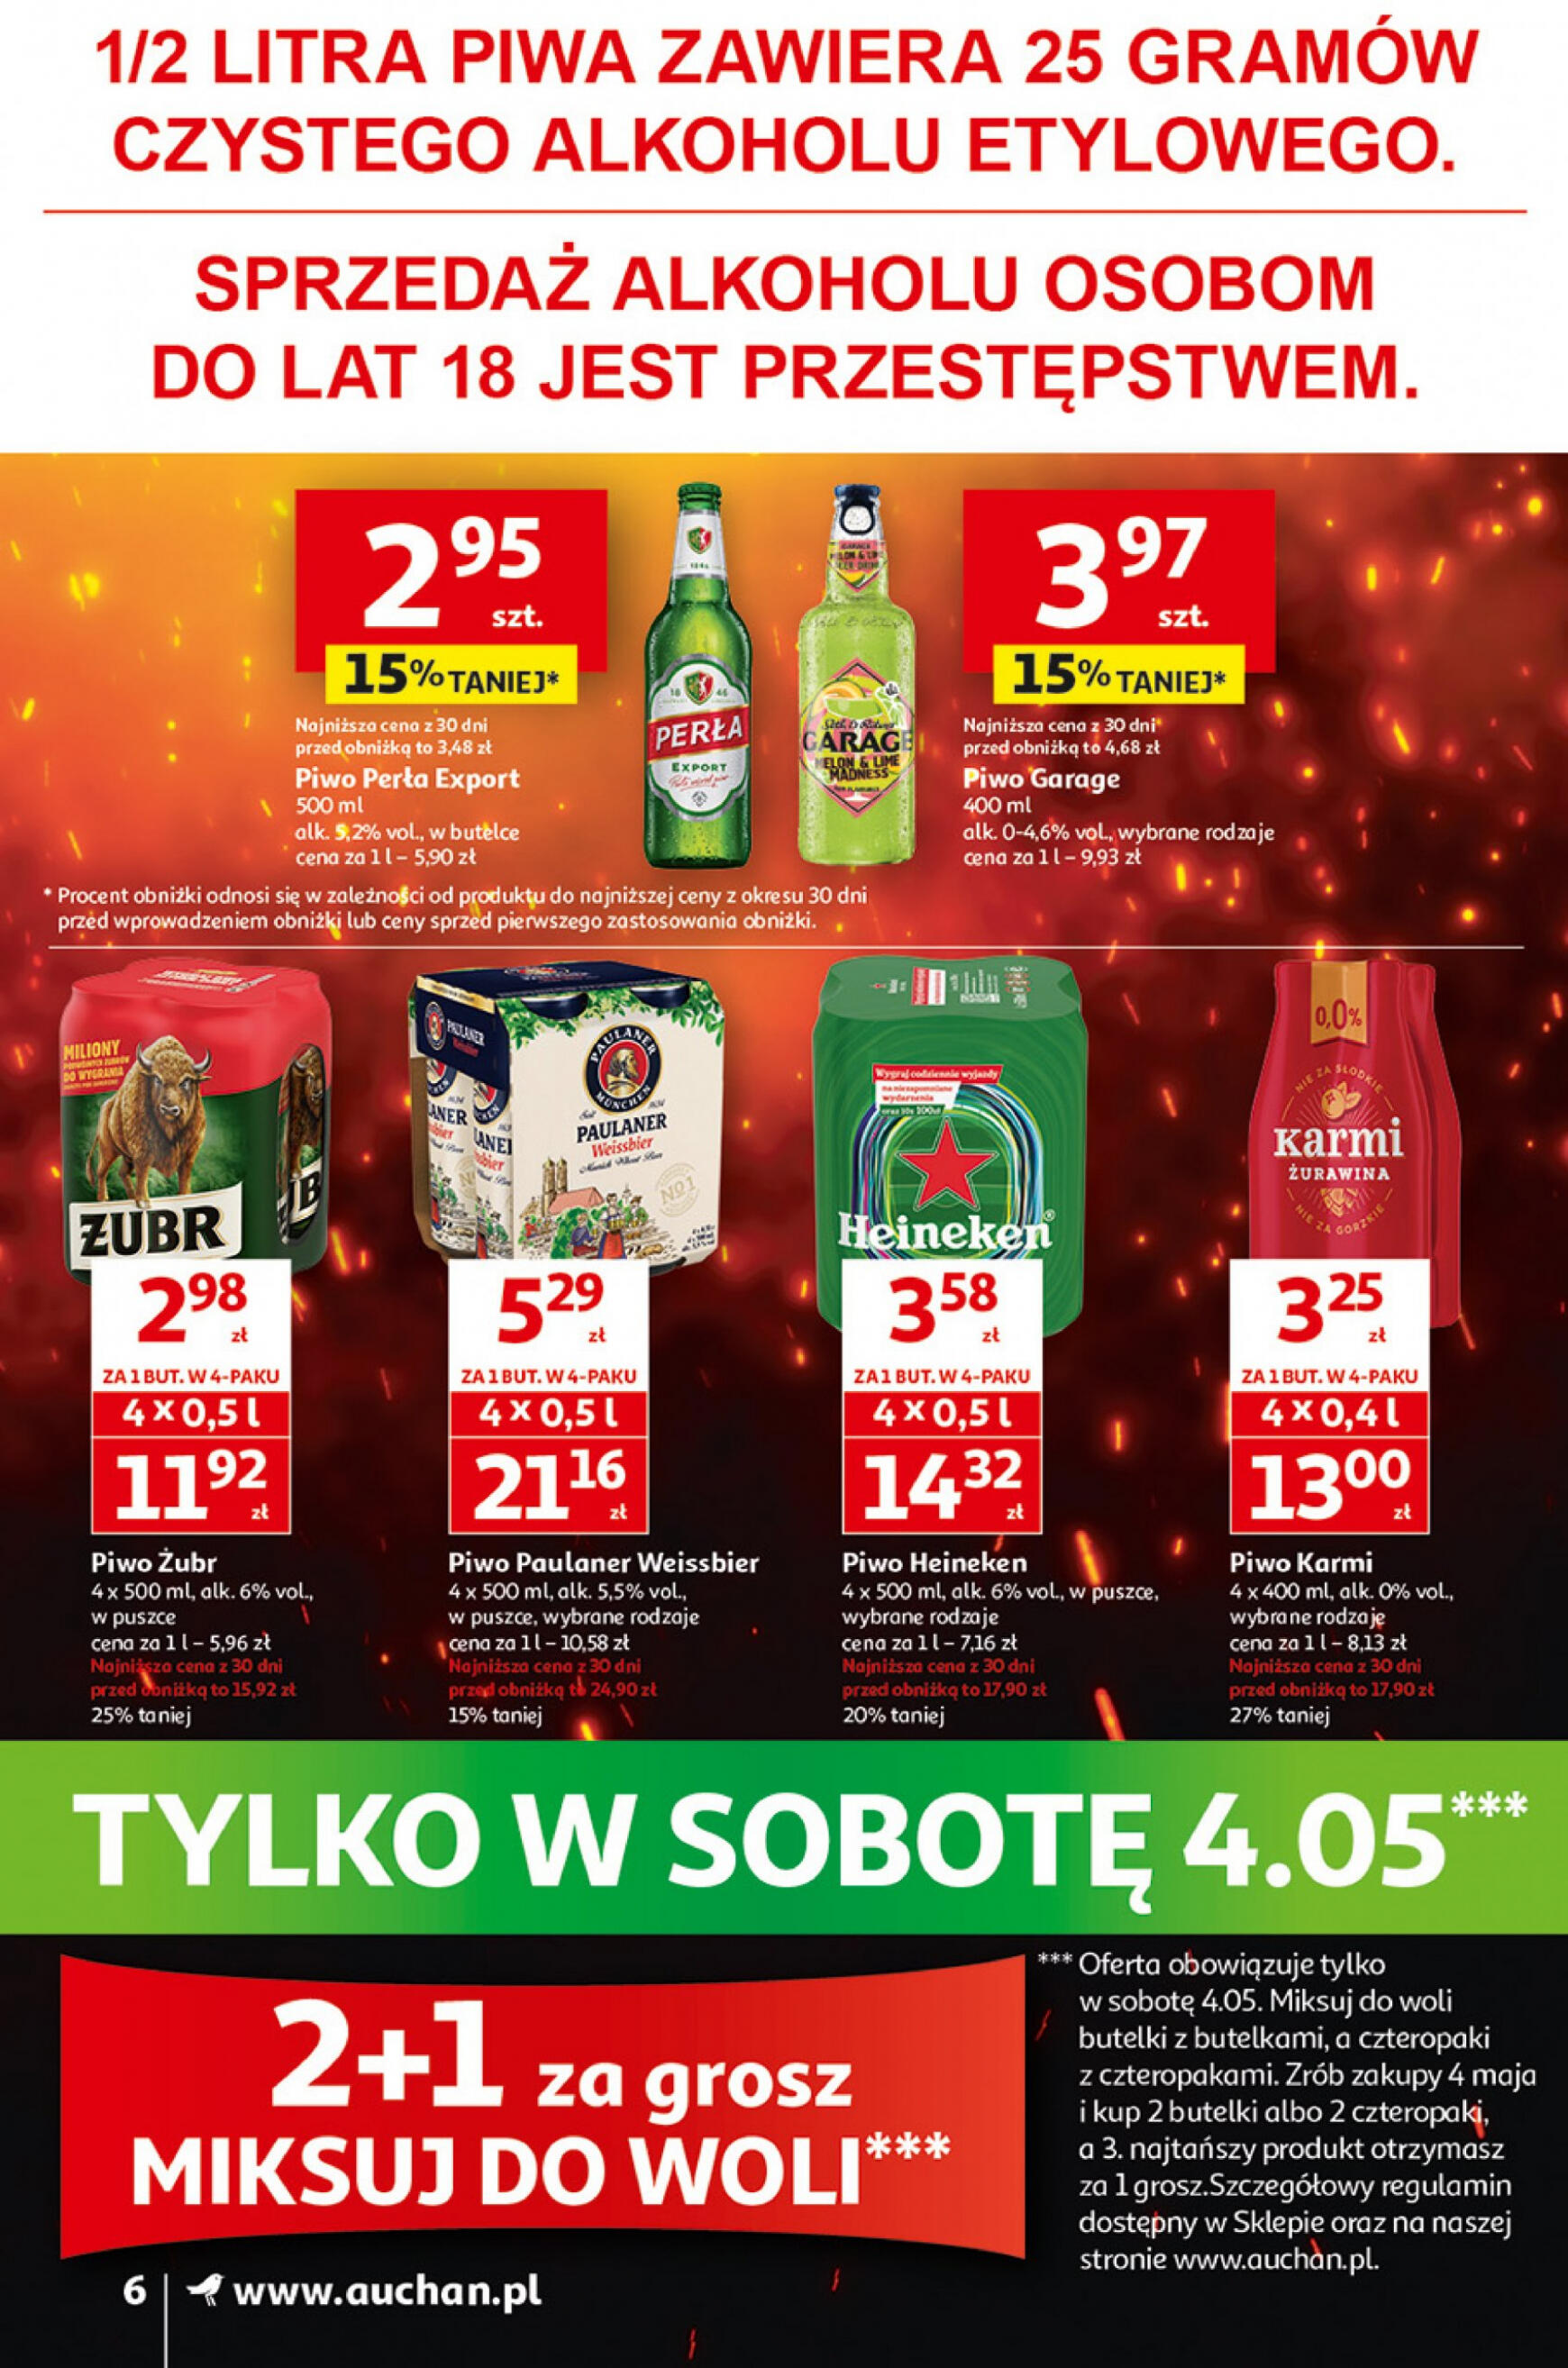 auchan - Supermarket Auchan - Gazetka Jeszcze taniej na urodziny gazetka aktualna ważna od 02.05. - 08.05. - page: 6